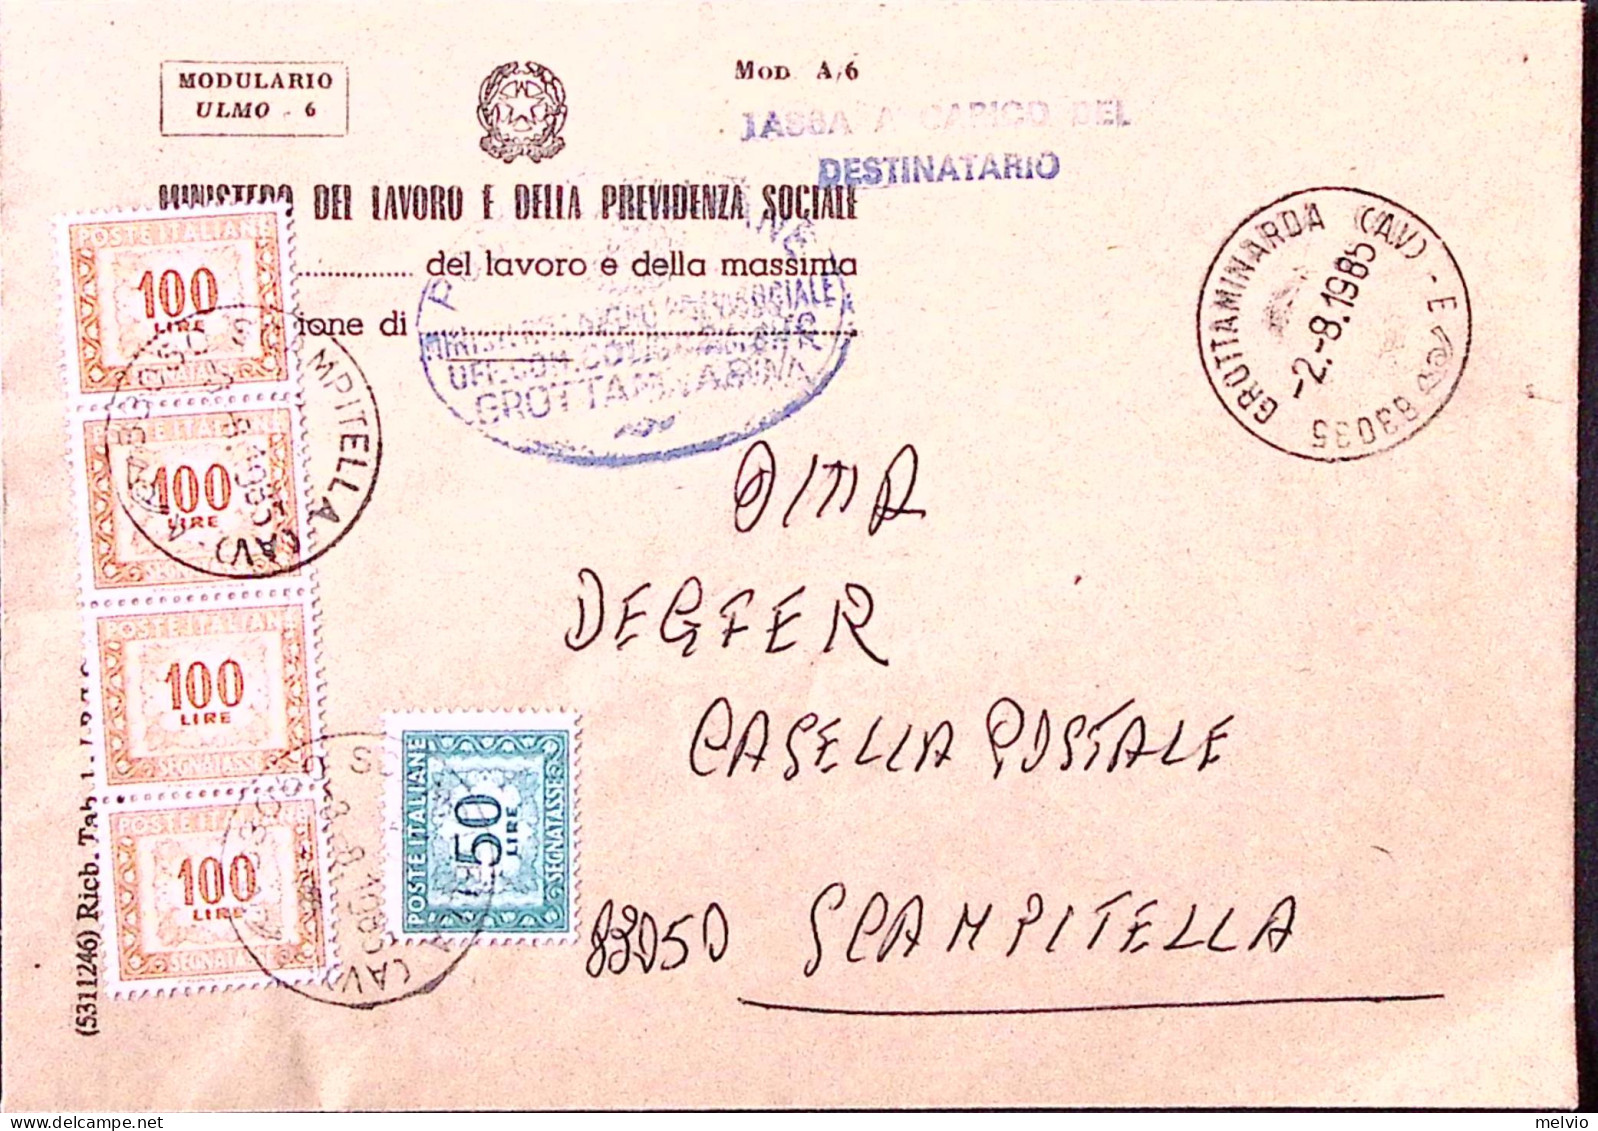 1985-Segnatasse Lire 50 + Quatttro Lire 100 Su Busta Grottaminarda (2.8) Tassa C - 1981-90: Marcophilia